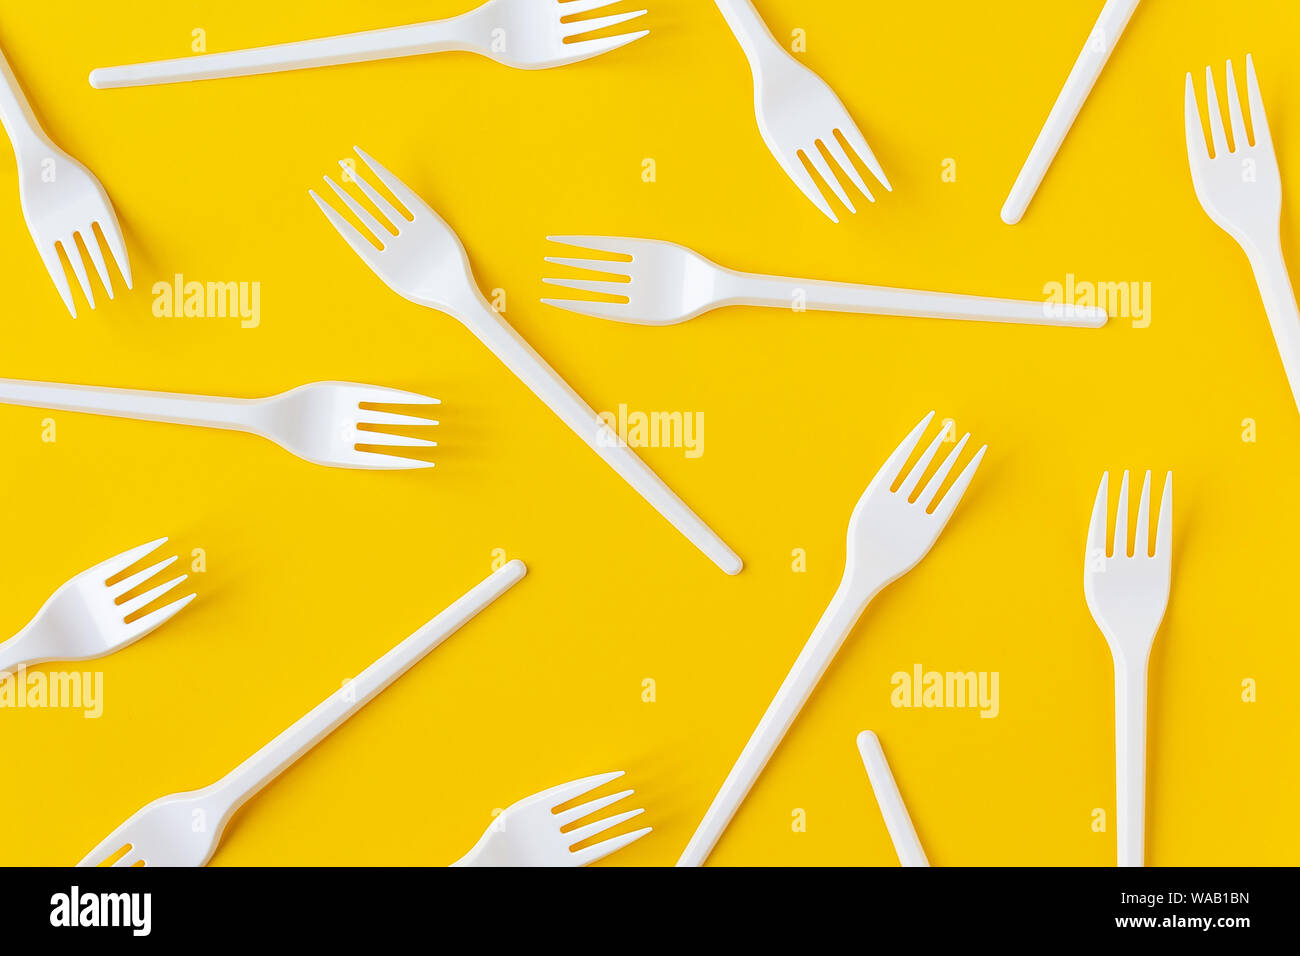 Les fourchettes en plastique blanc sur fond jaune vif. Flatlay. Restauration rapide, eco et pas de concept en plastique. Ouvrir la composition. Banque D'Images